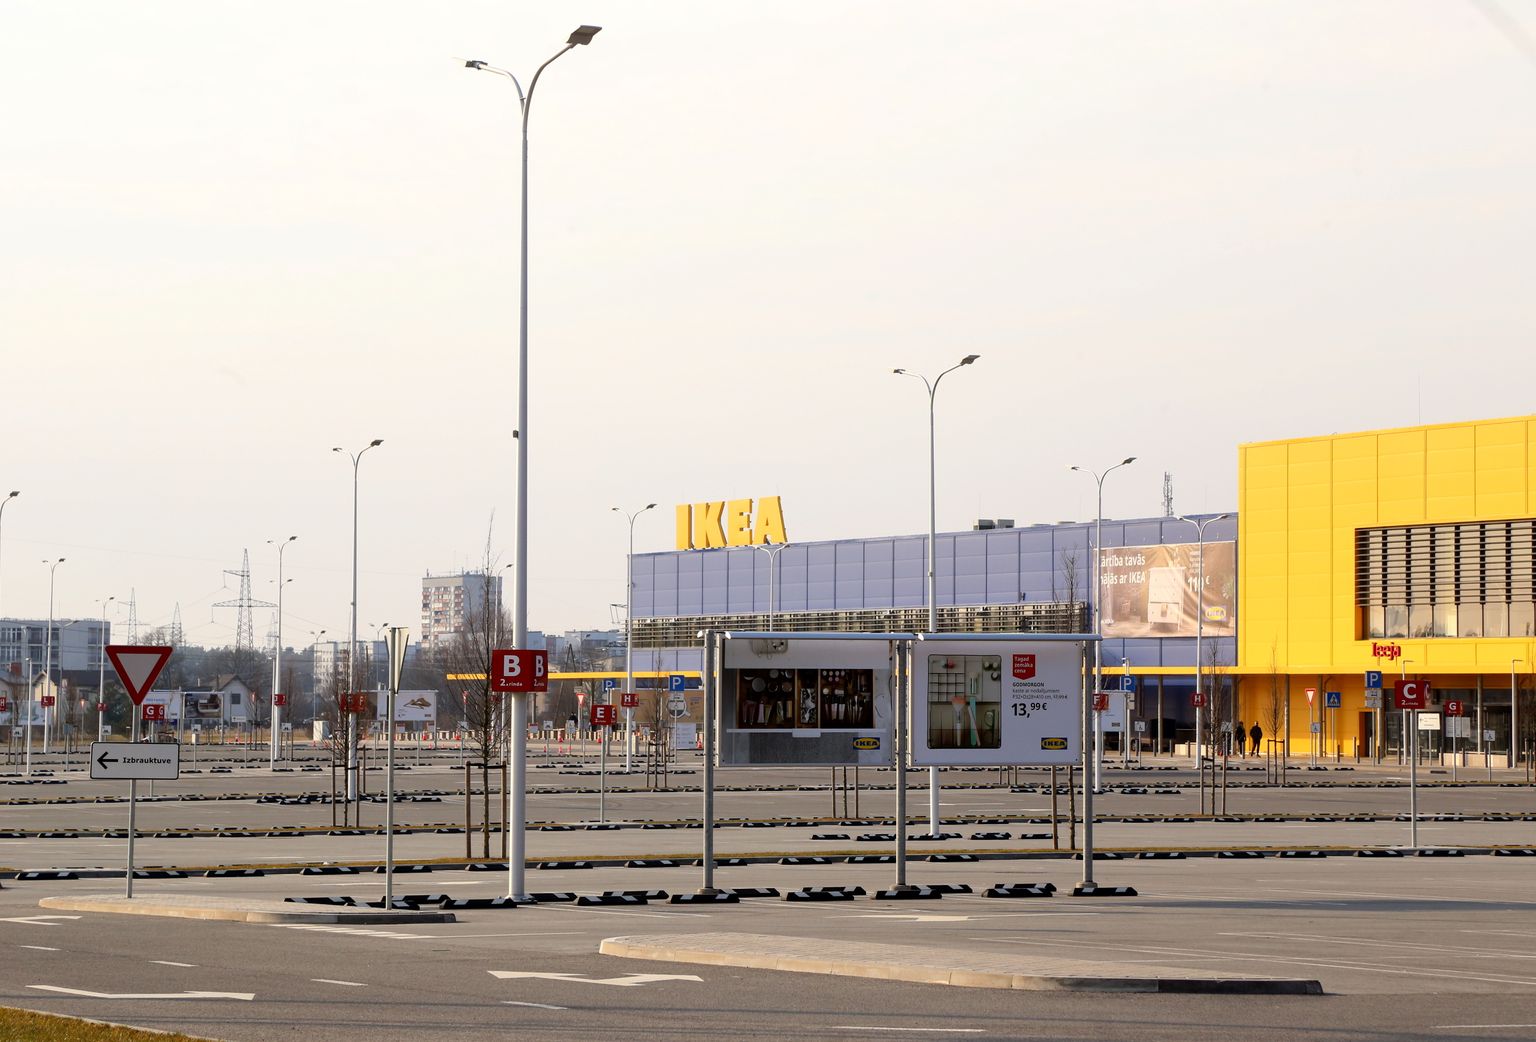 Zviedrijas mājokļu labiekārtošanas preču kompānijas "IKEA" lielveikals, kurš slēgts pēc valdības lēmuma par tirdzniecības centru slēgšanu brīvdienās un svētku dienās jaunā koronavīrusa izraisītās slimības Covid-19 izplatīšanās ierobežošanai.